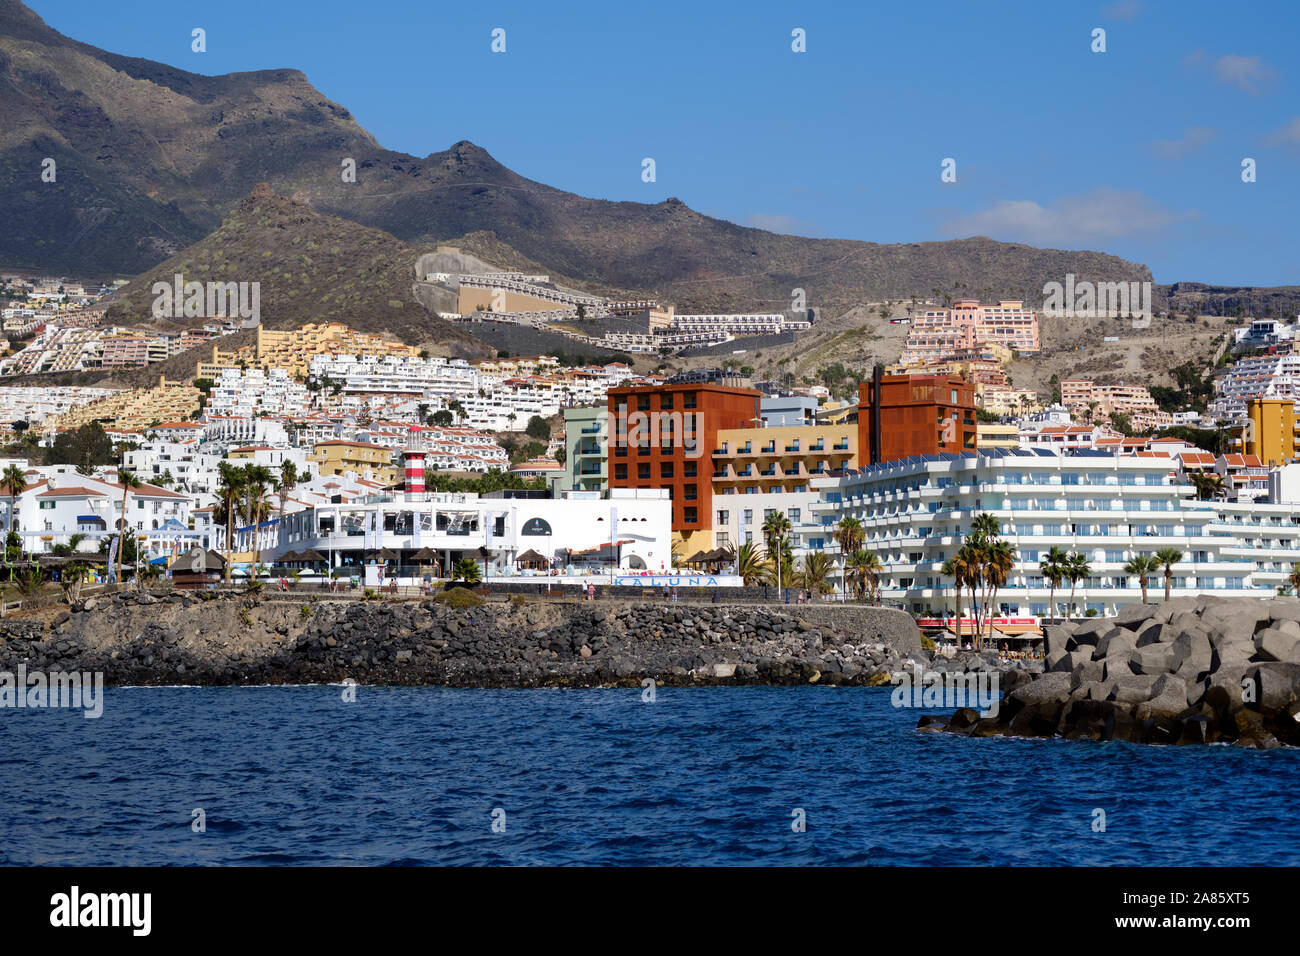 Tenerife, Spagna - 15 ottobre 2019: Waterside distante vista turistica località Los Cristianos, situato sulla costa meridionale delle Isole Canarie, Spagna Foto Stock